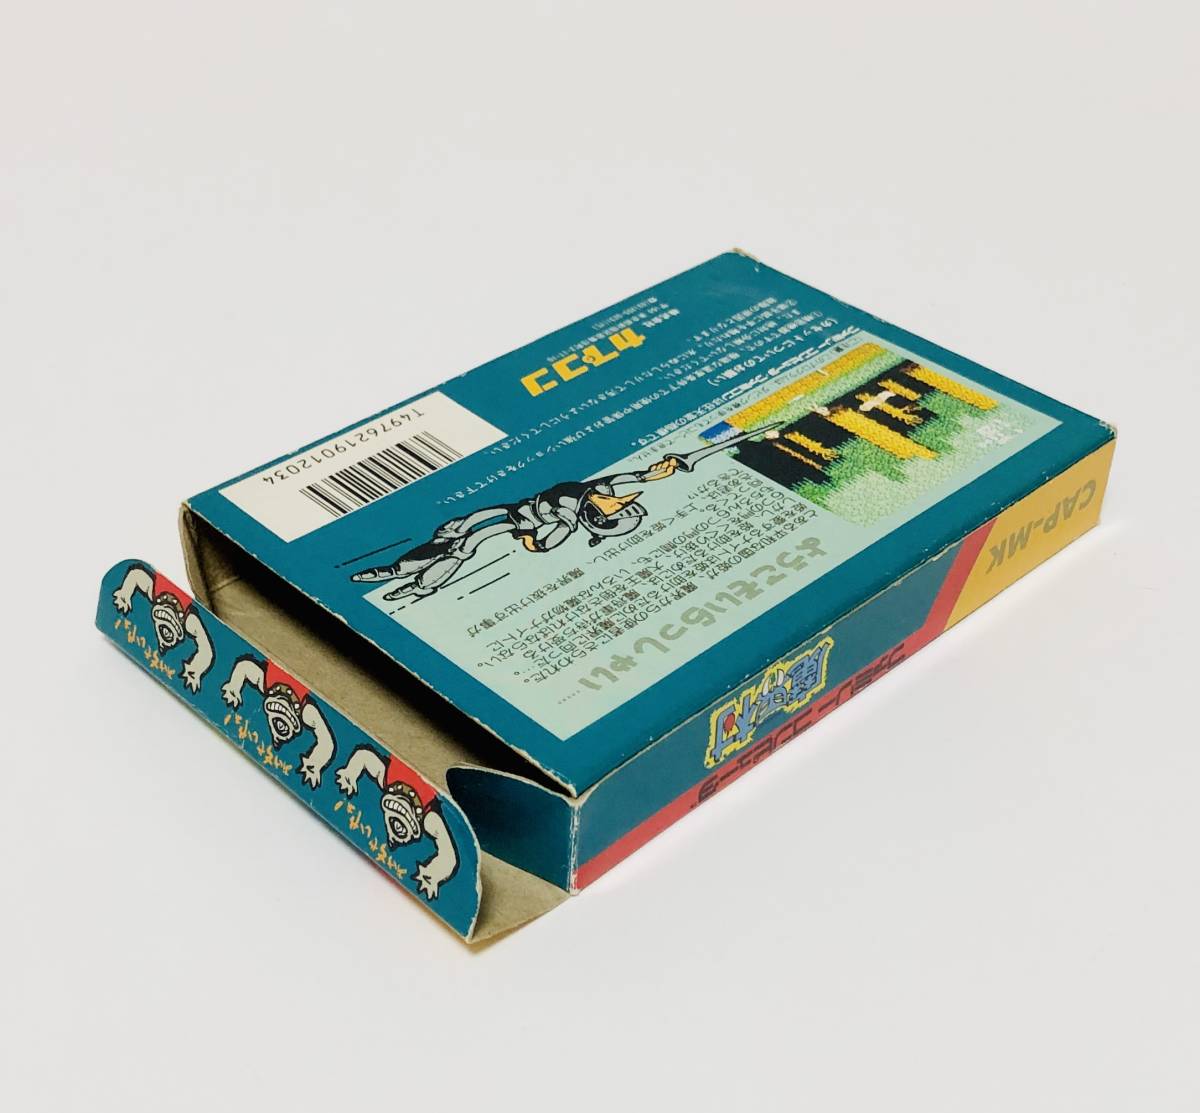 【送料無料】 ファミコン 魔界村 箱説付き 痛みあり カプコン レトロゲーム Nintendo Famicom Makaimura CIB Capcom_画像5